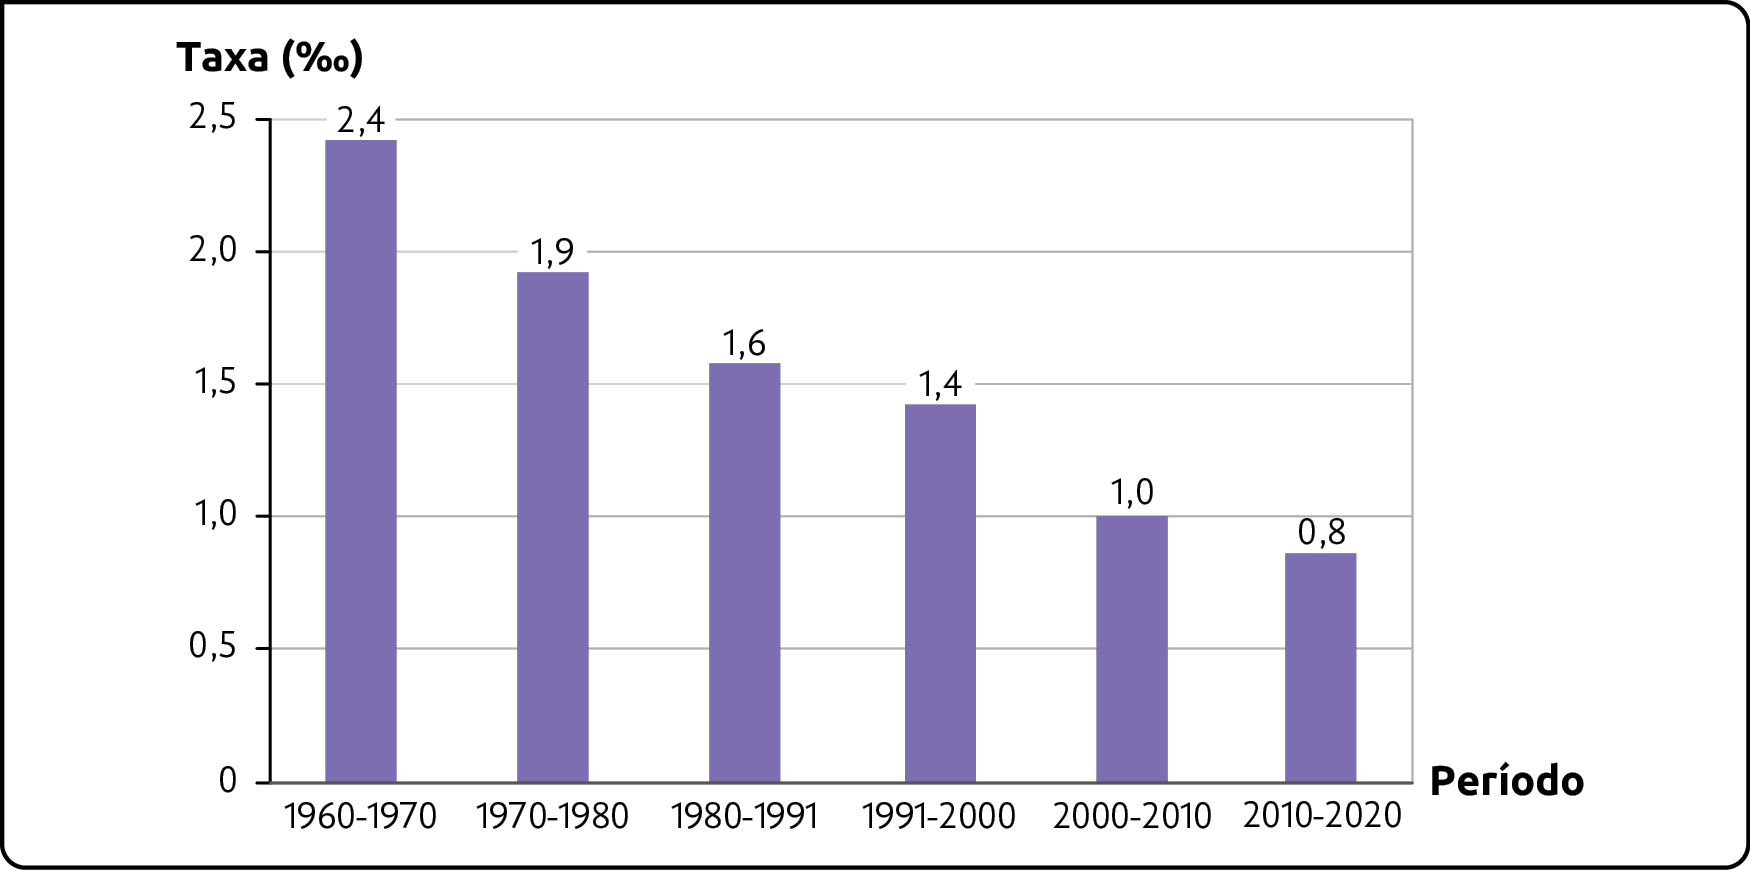 Gráfico. Brasil: crescimento natural da população (1960-2020). 
Período de 1960 a 1970. Taxa de 2,4 por mil. 
Período de 1970 a 1980. Taxa de 1,9 por mil.  
Período de 1980 a 1991. Taxa de 1,6 por mil.   
Período de 1991 a 2000. Taxa de 1,4 por mil.  
Período de 2000 a 2010. Taxa de 1,0 por mil.   
Período de 2010 a 2020. Taxa de 0,8 por mil.